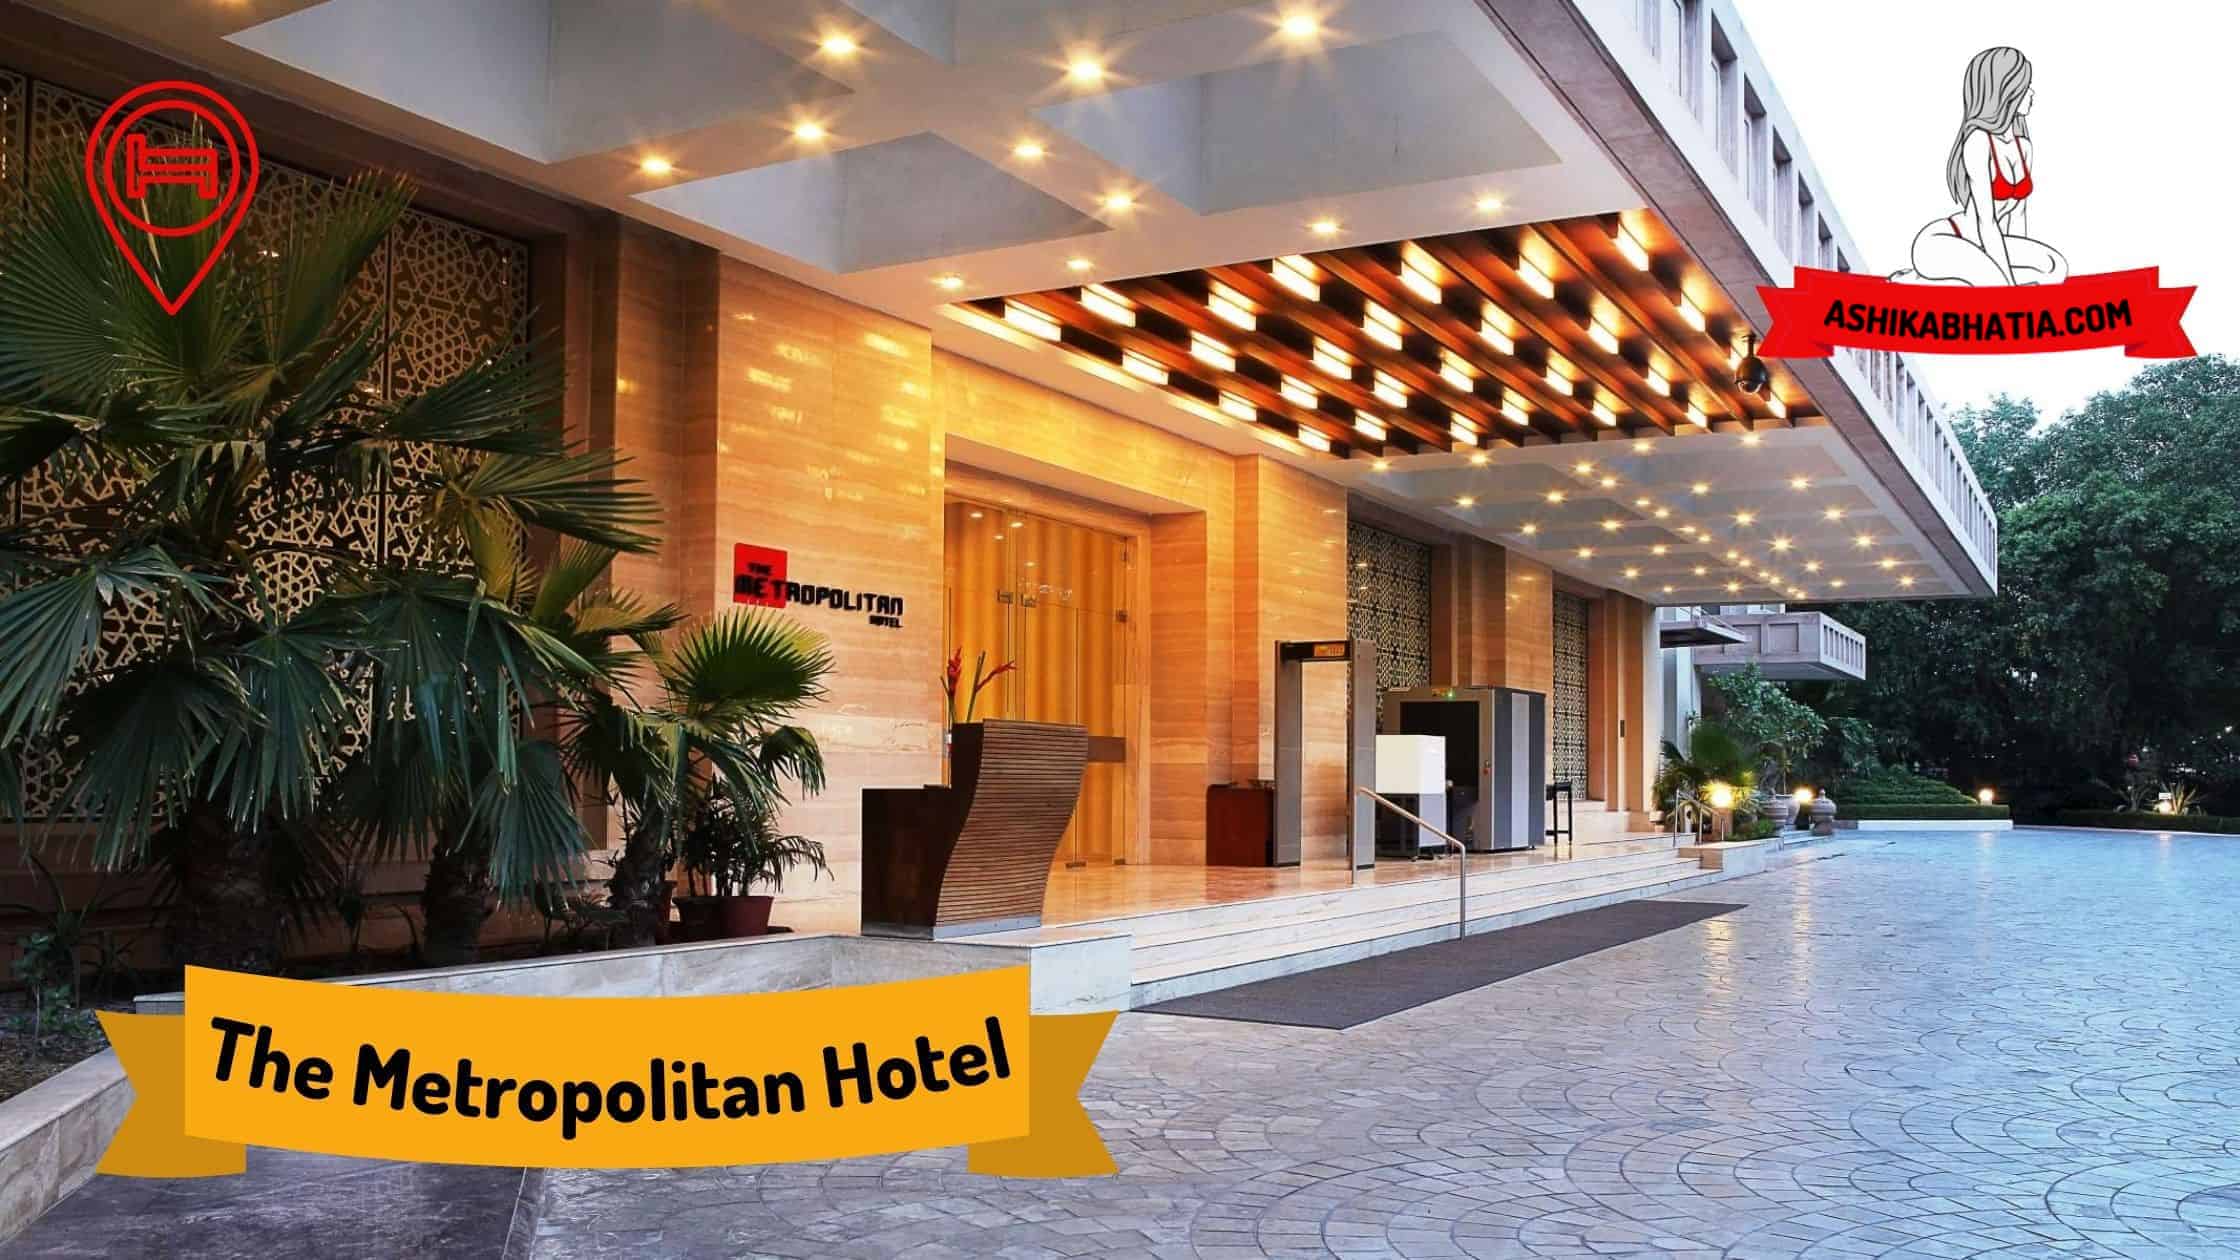 The Metropolitan Hotel Escorts